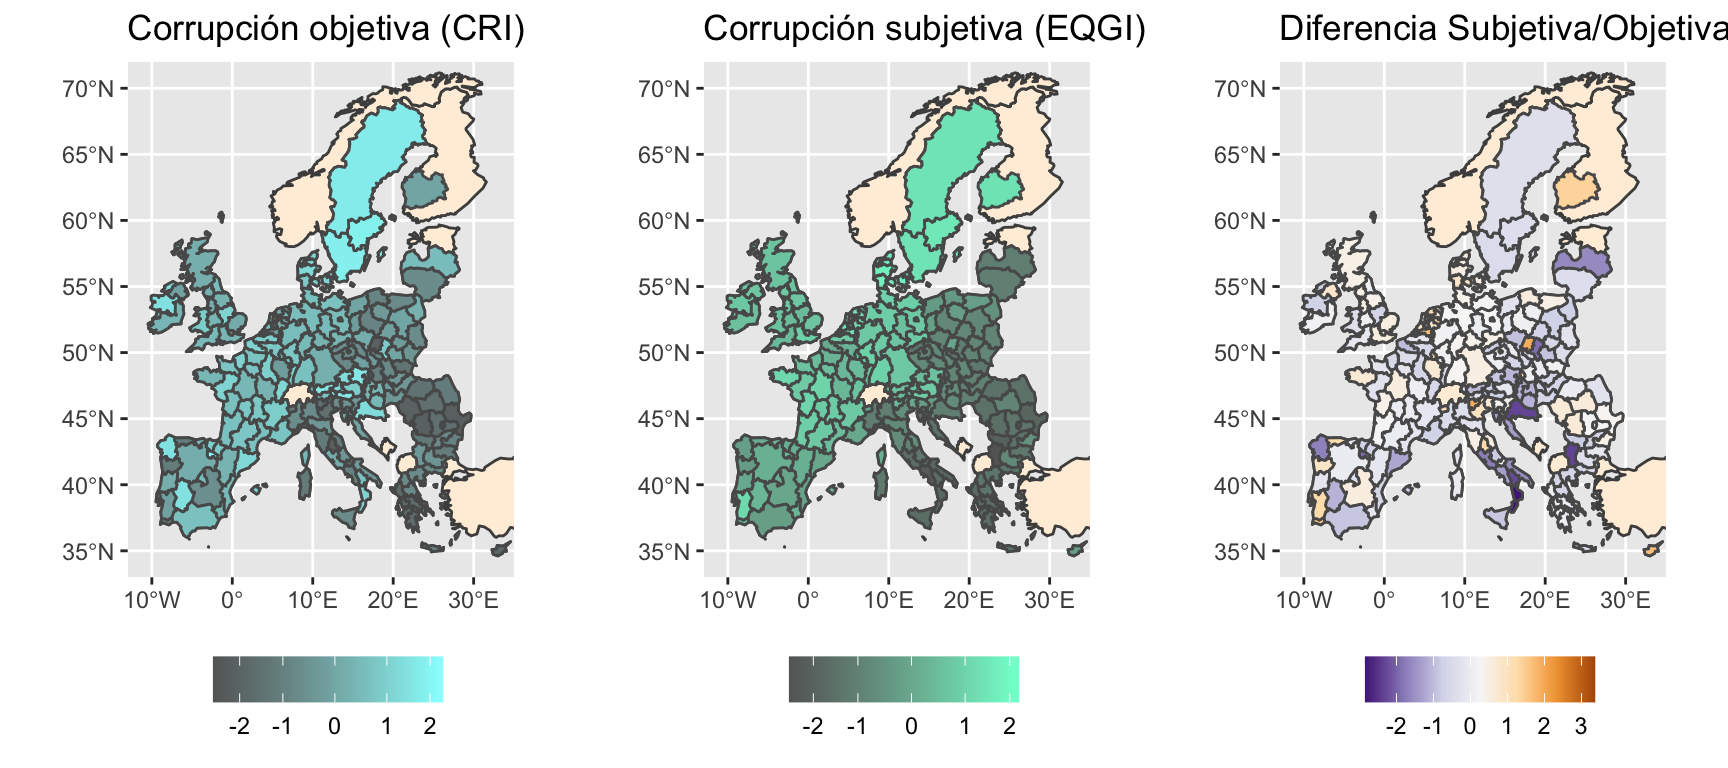 La correlación en europa